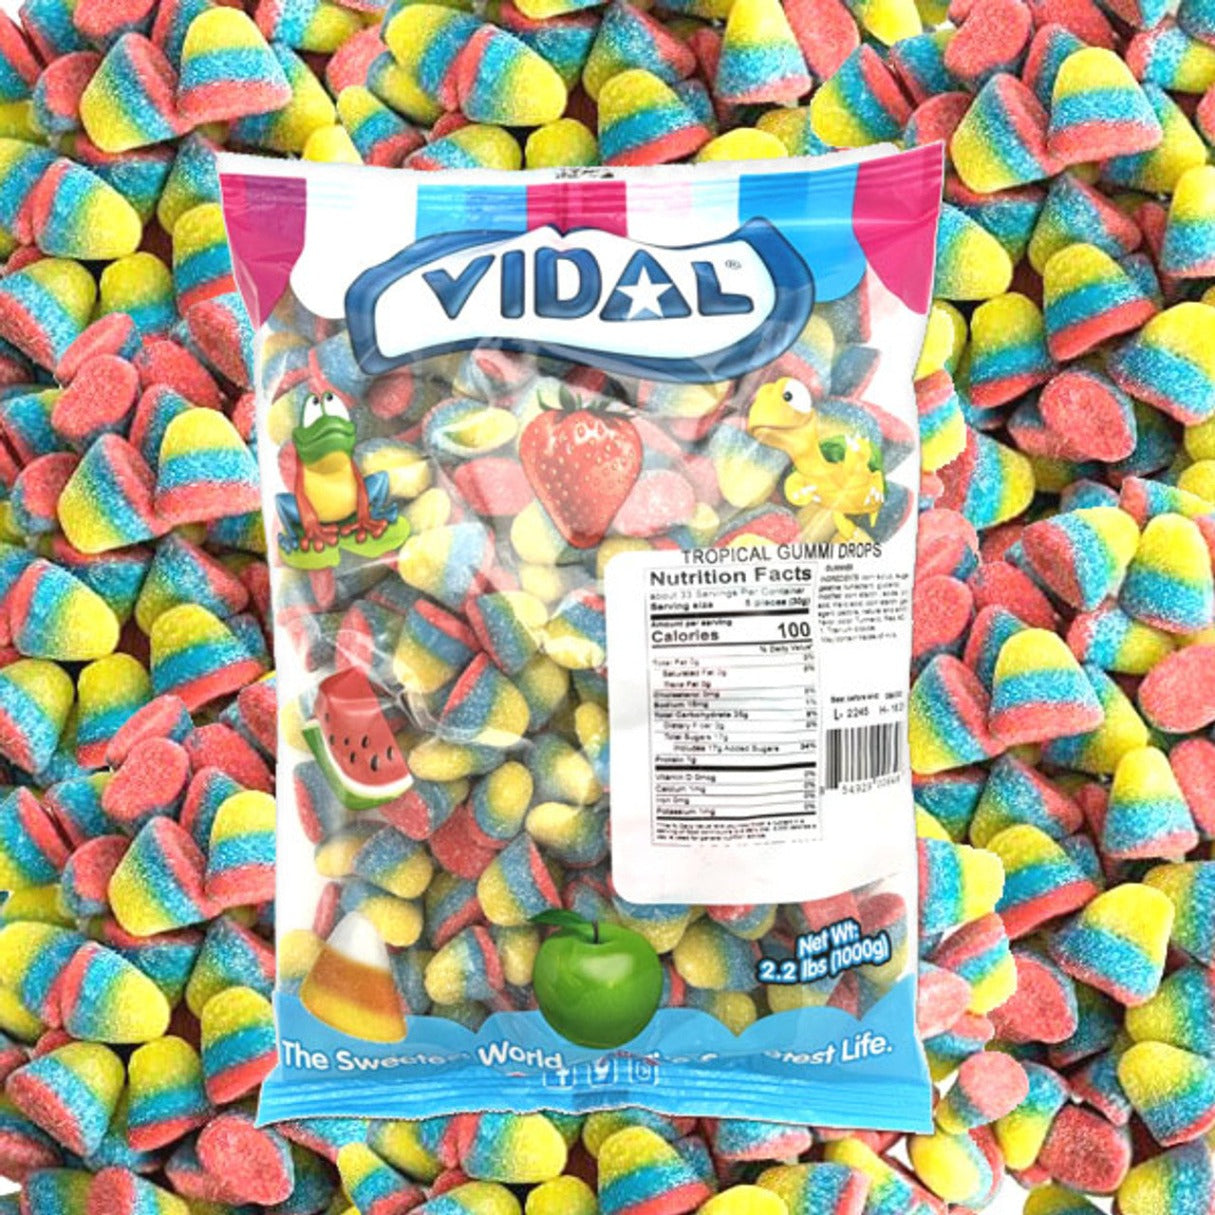 Vidal Tropical Gummi Drops Candy Bulk 2.2lb - 3ct